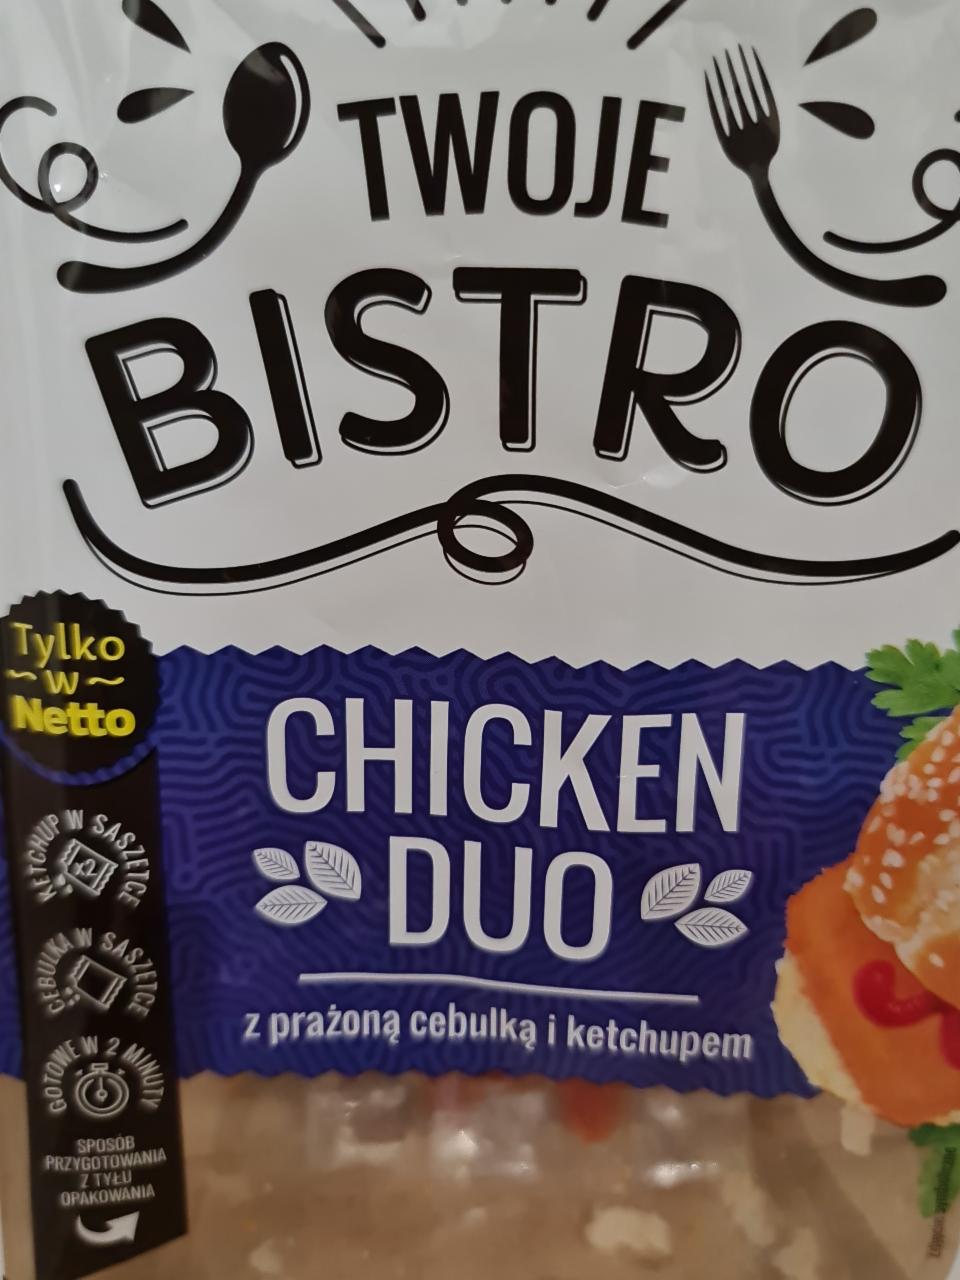 Zdjęcia - Twoje bistro chicken duo z prażoną cebulką i ketchupem